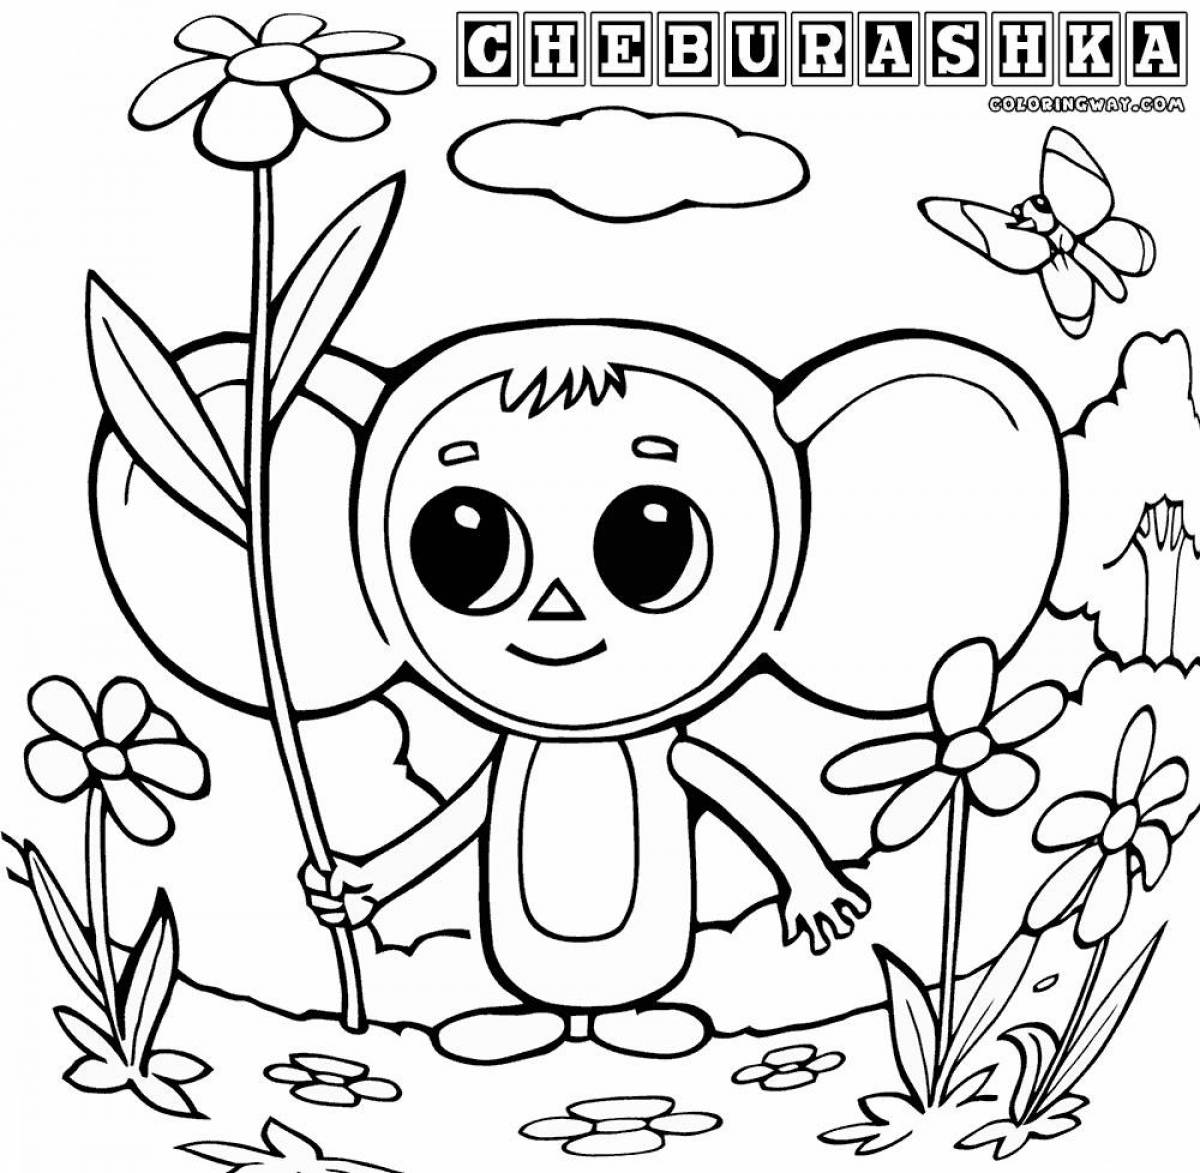 Live cheburashka picture